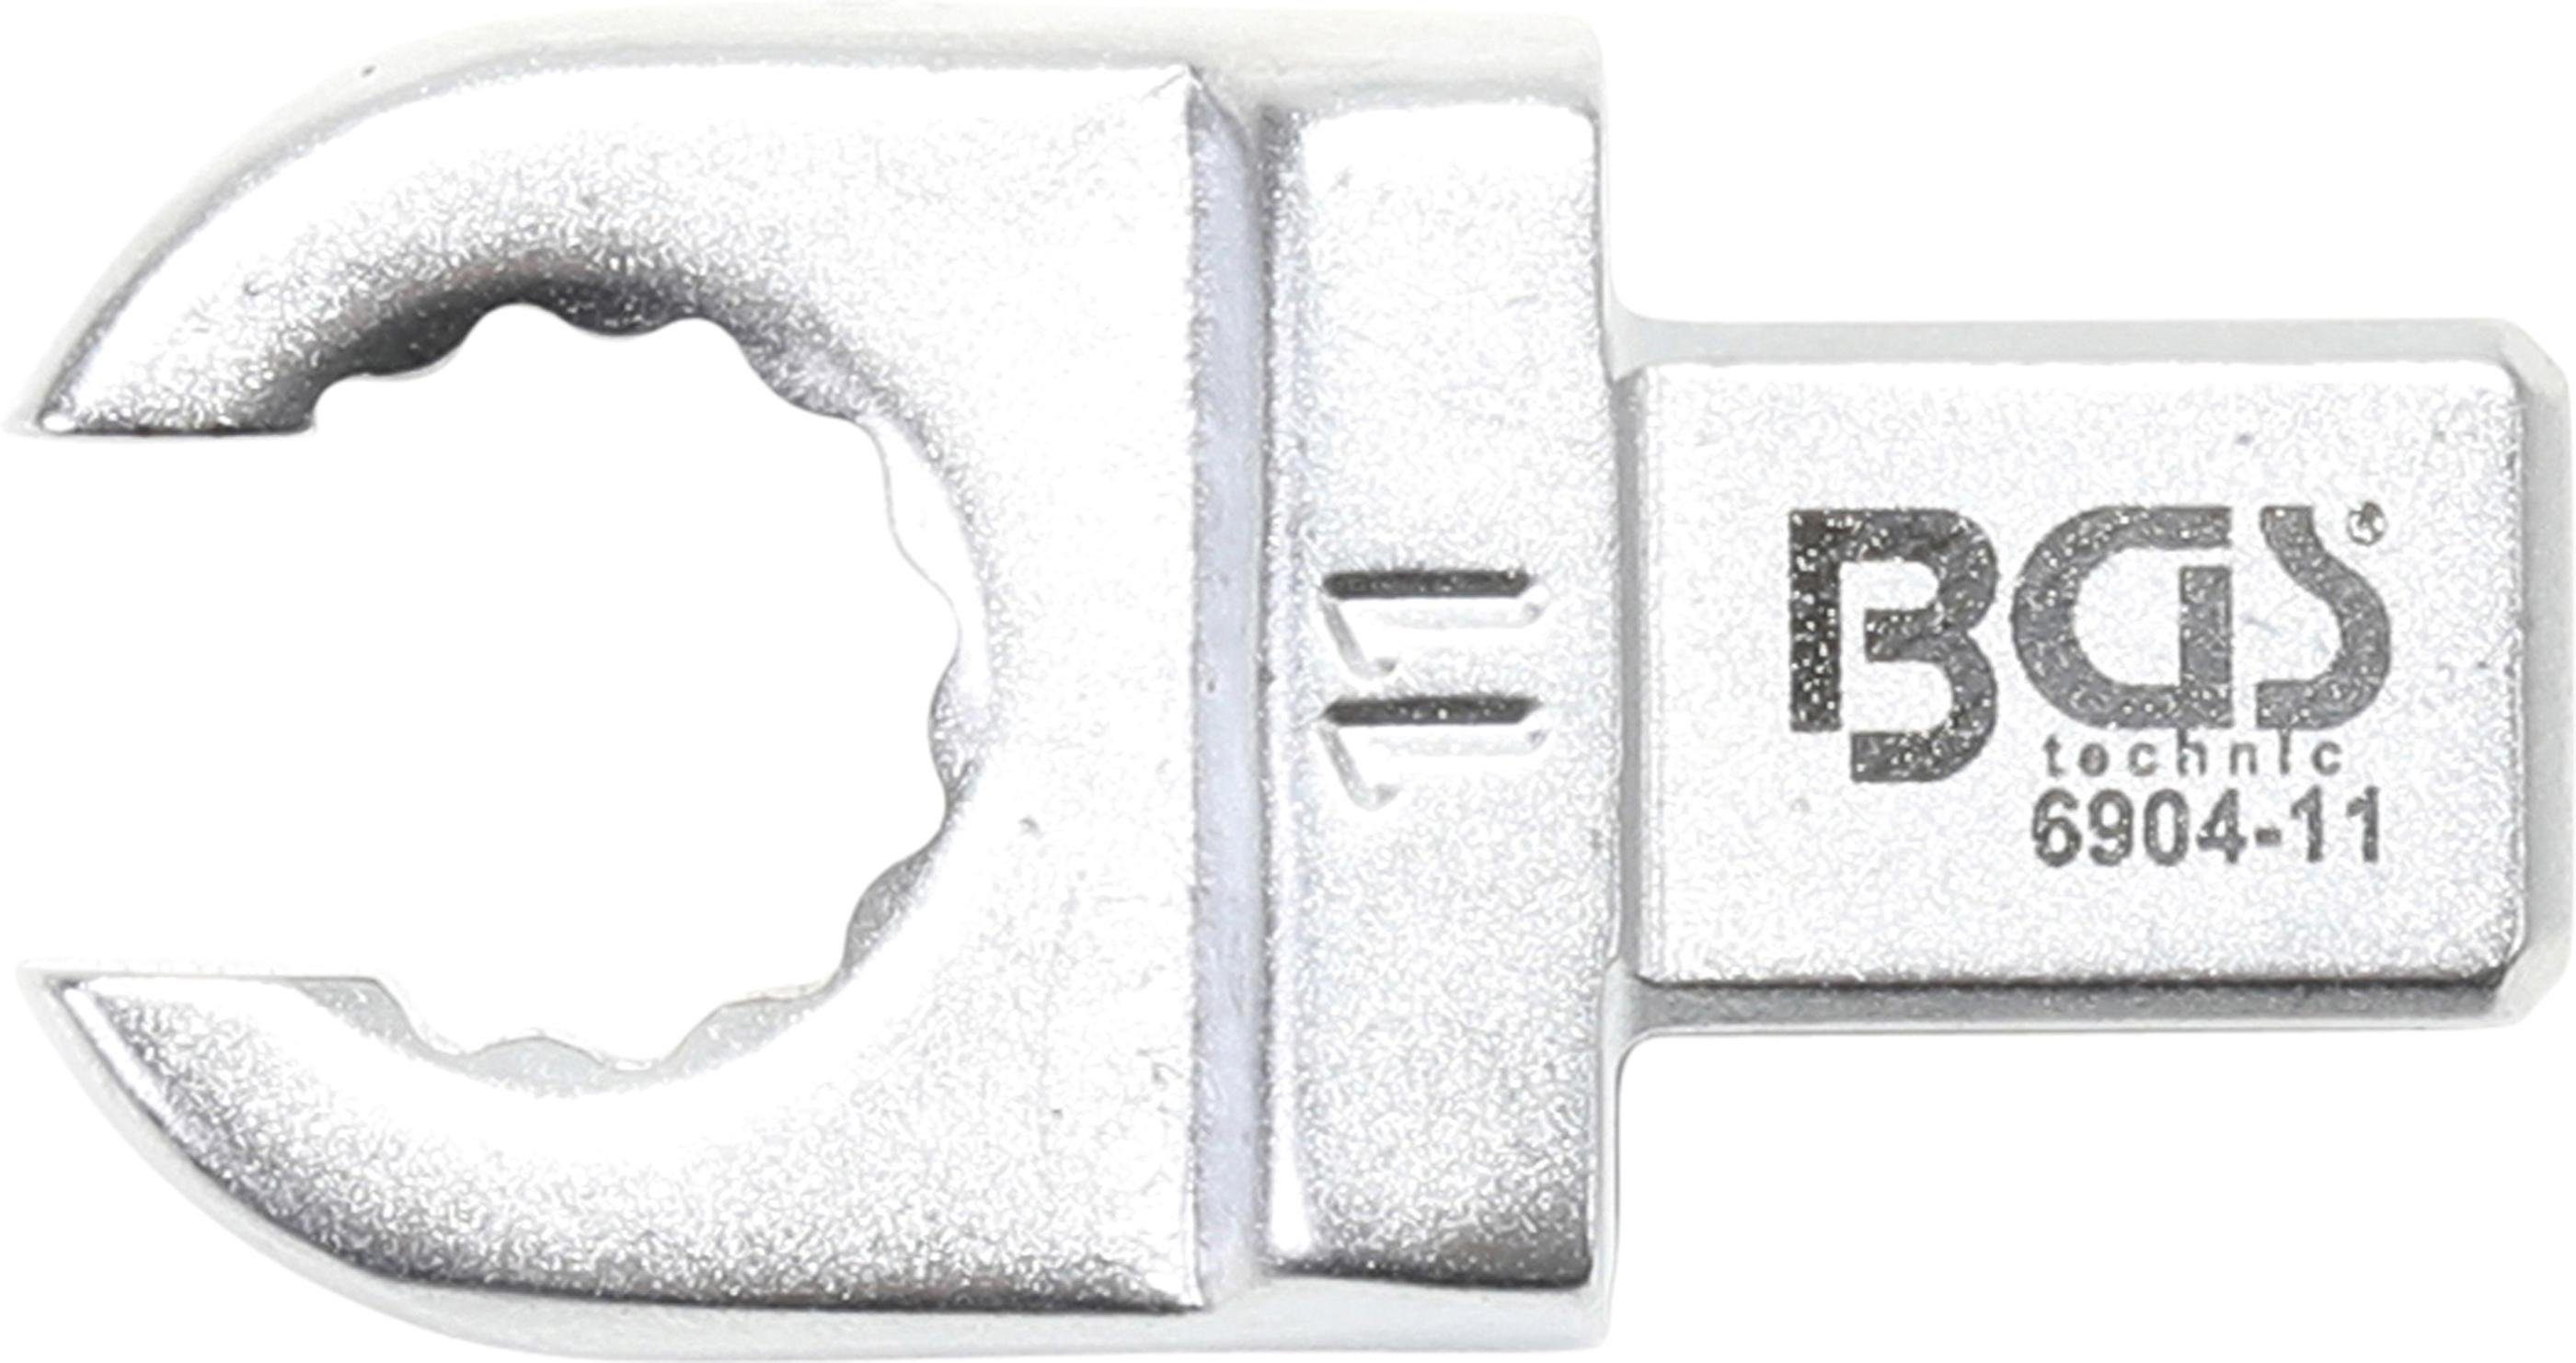 BGS technic Ausstechform Einsteck-Ringschlüssel, offen, 11 mm, Aufnahme 9 x 12 mm